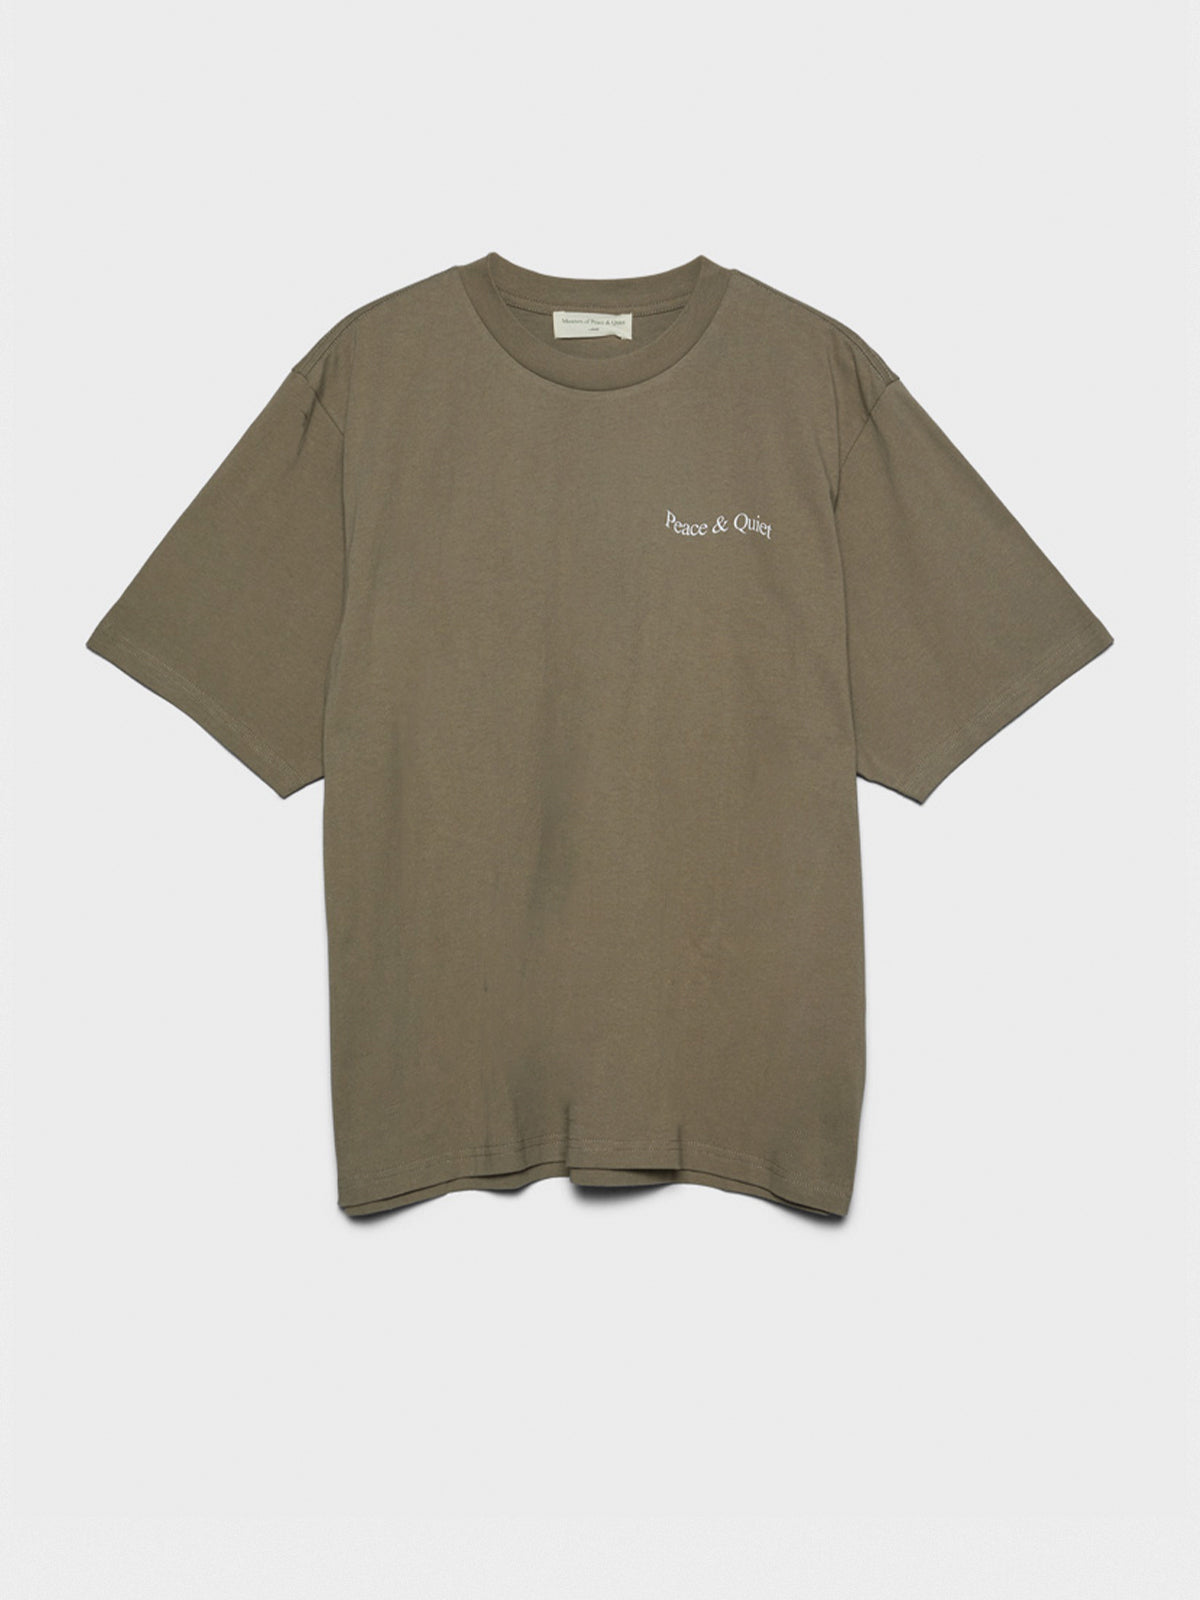 Wordmark T-Shirt in Brown